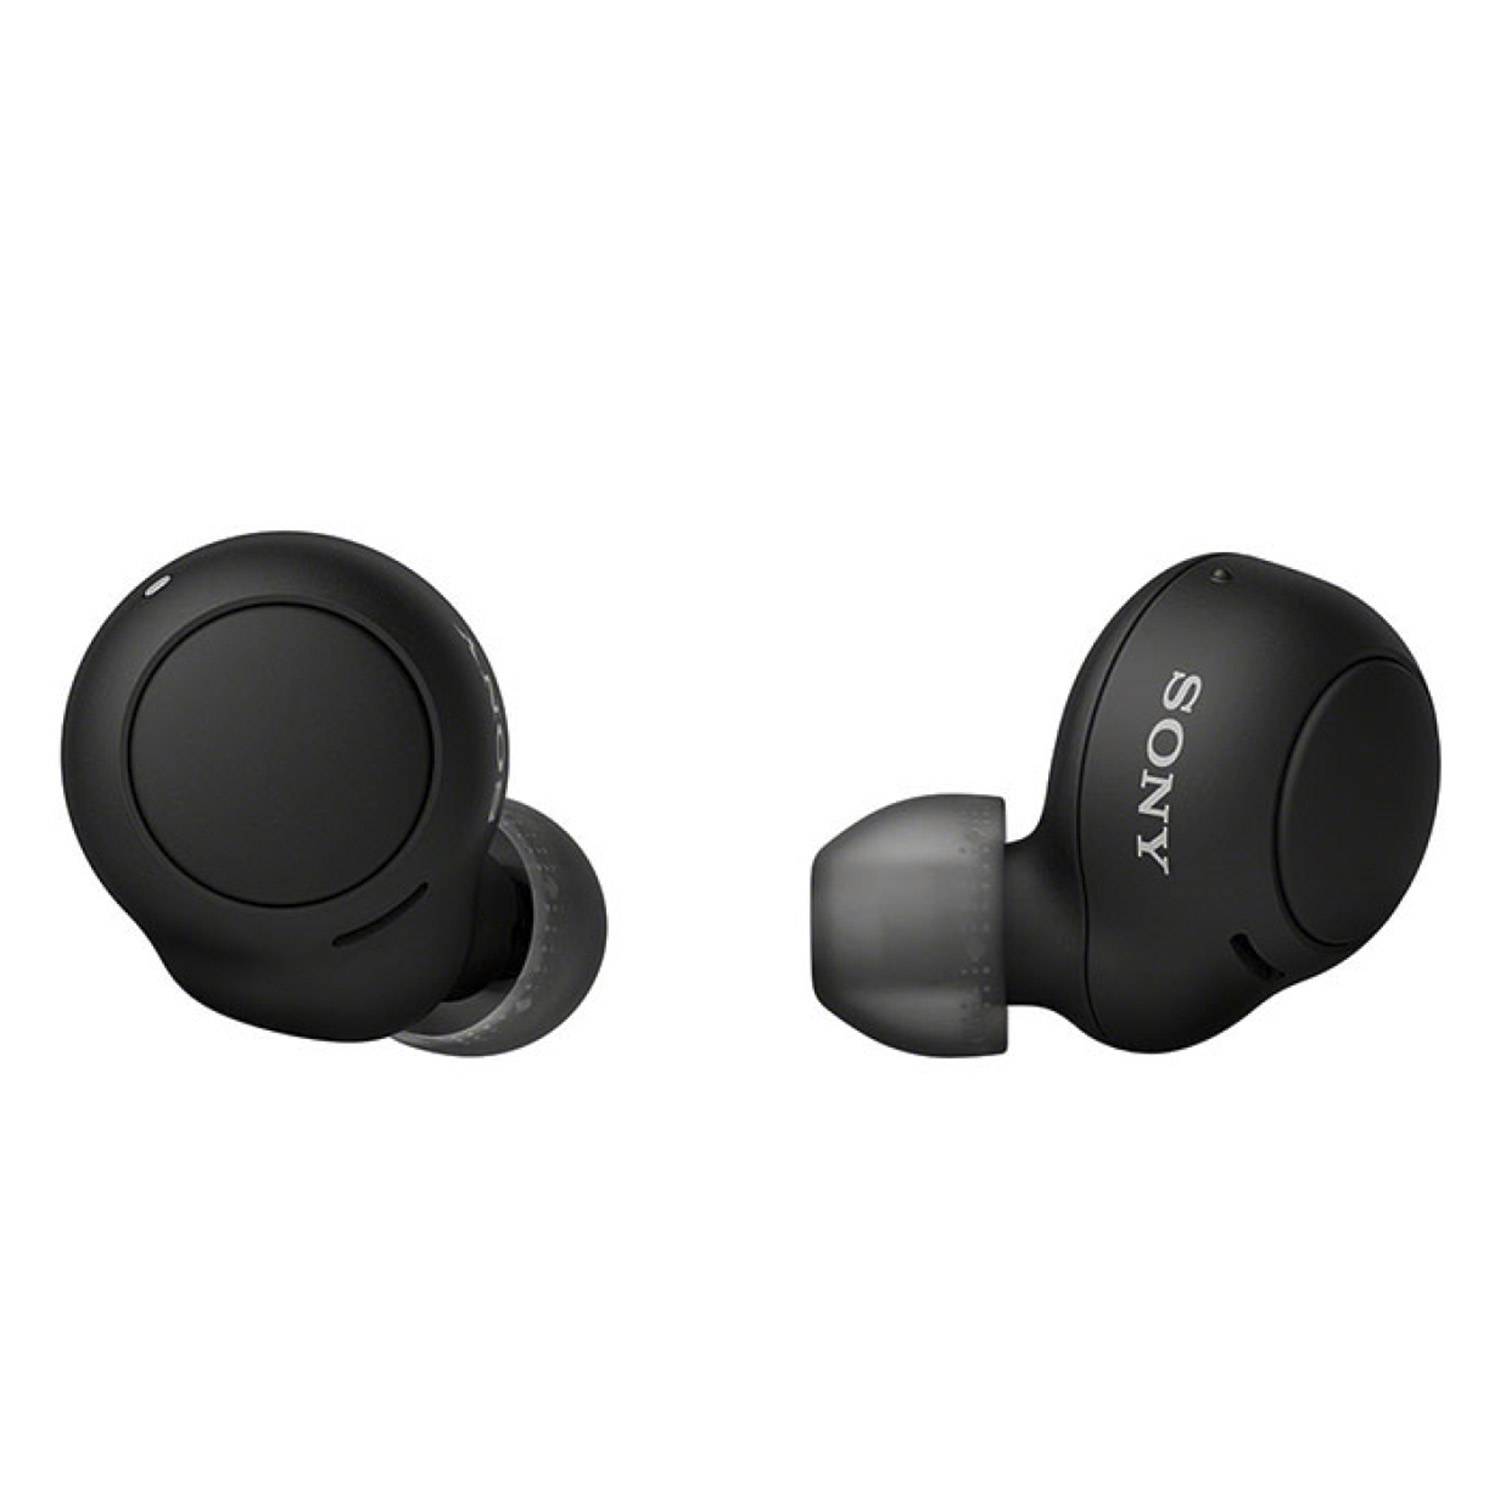 SONY Audífonos Sony Black Wireless Cancelación de ruido - Reacondicionado…